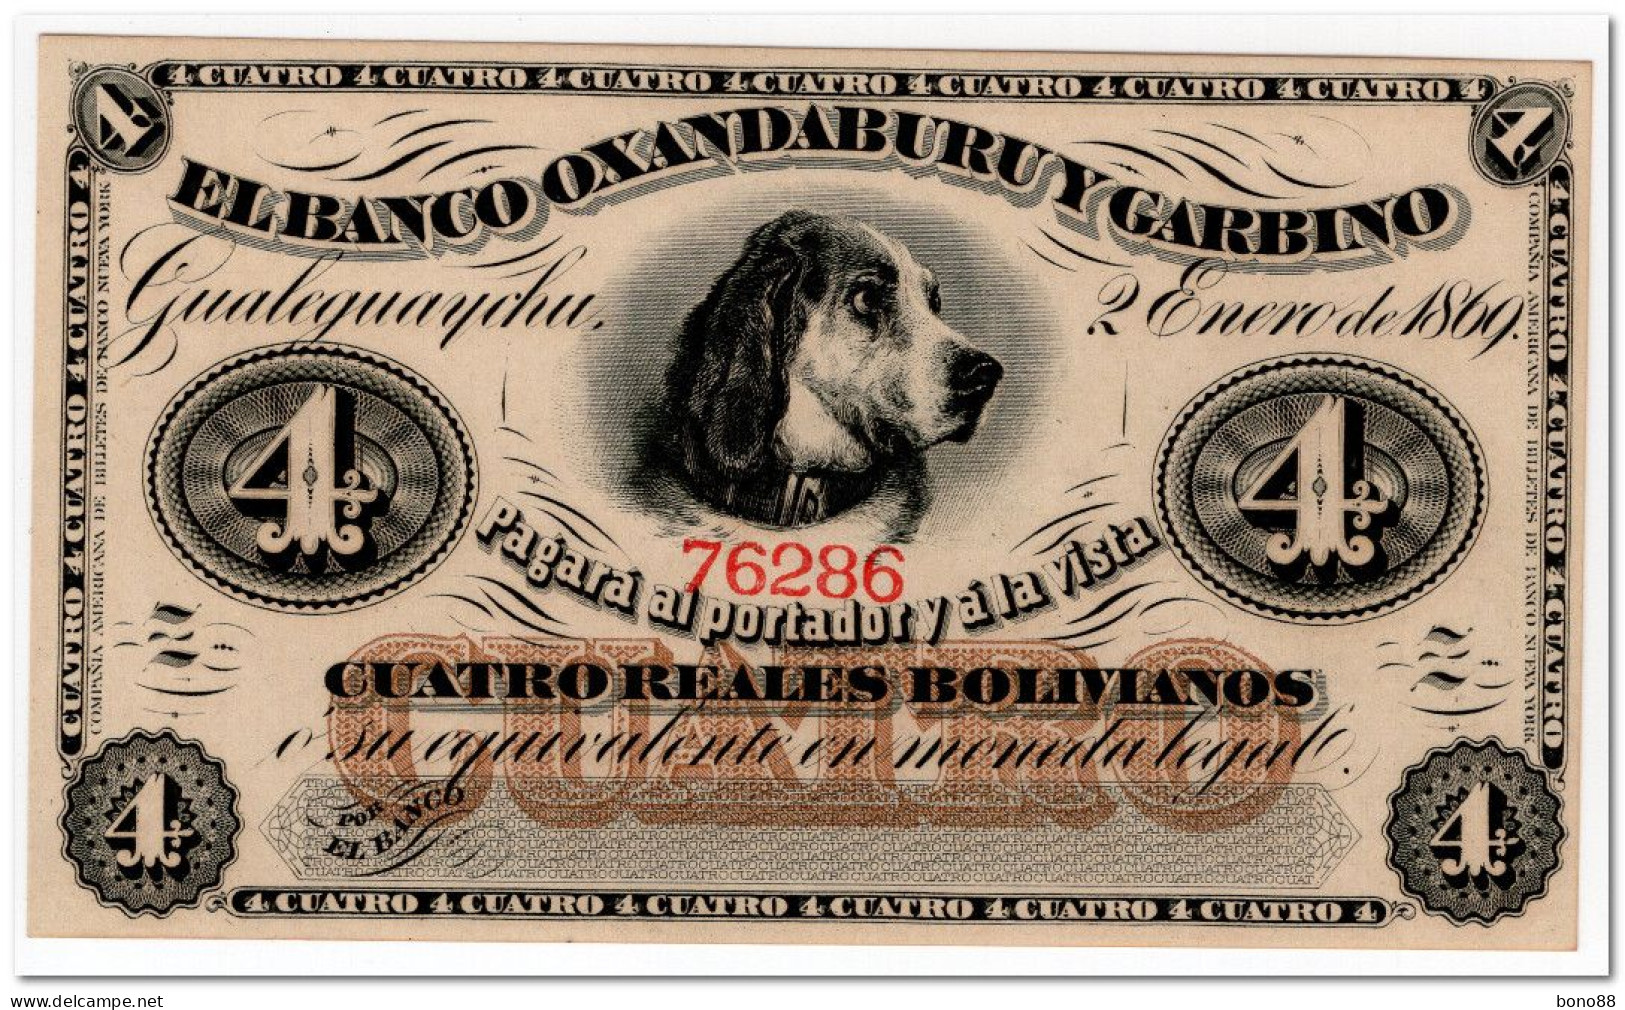 ARGENTINA,BANCO OXANDABURU Y GARBINO, 4 REALES BOLIVIANOS,1869,P.S1781,UNC - Argentina